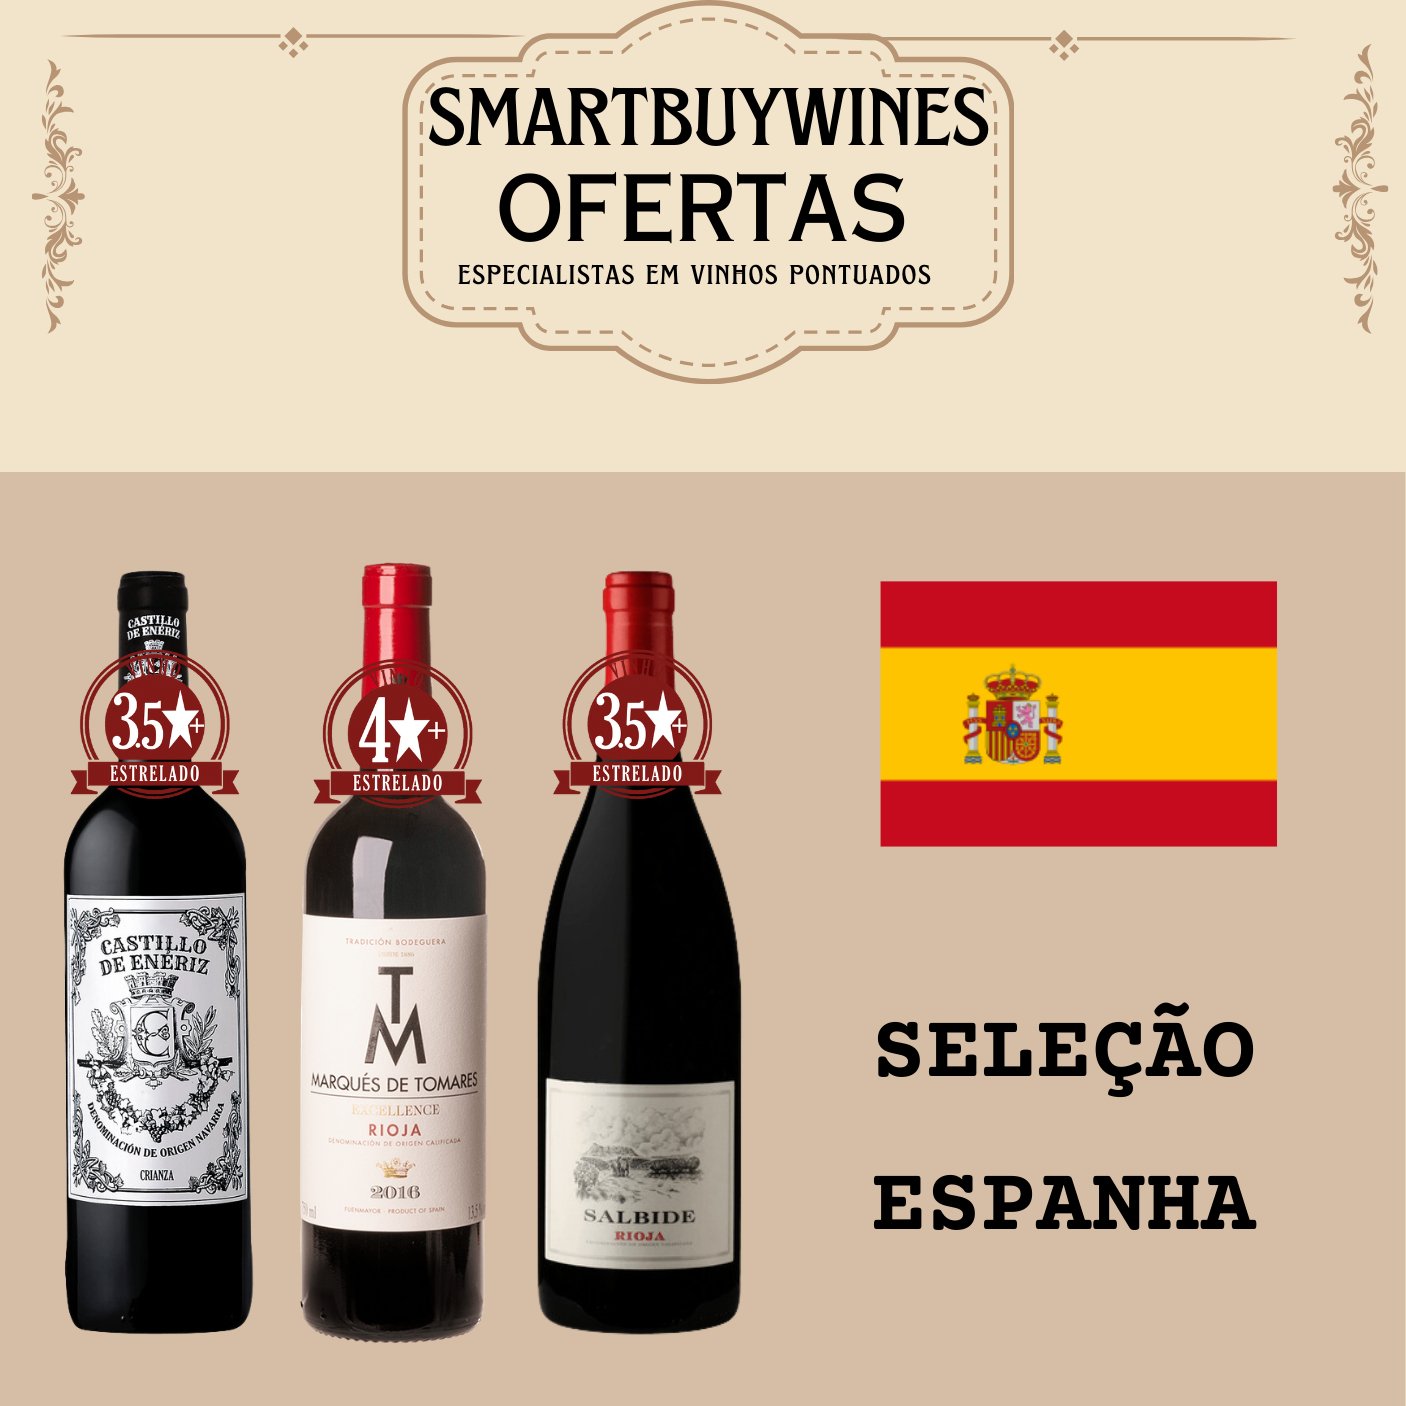 Seleção em oferta - Espanha - caixa de 3 vinhos - SmartBuyWines.com.br